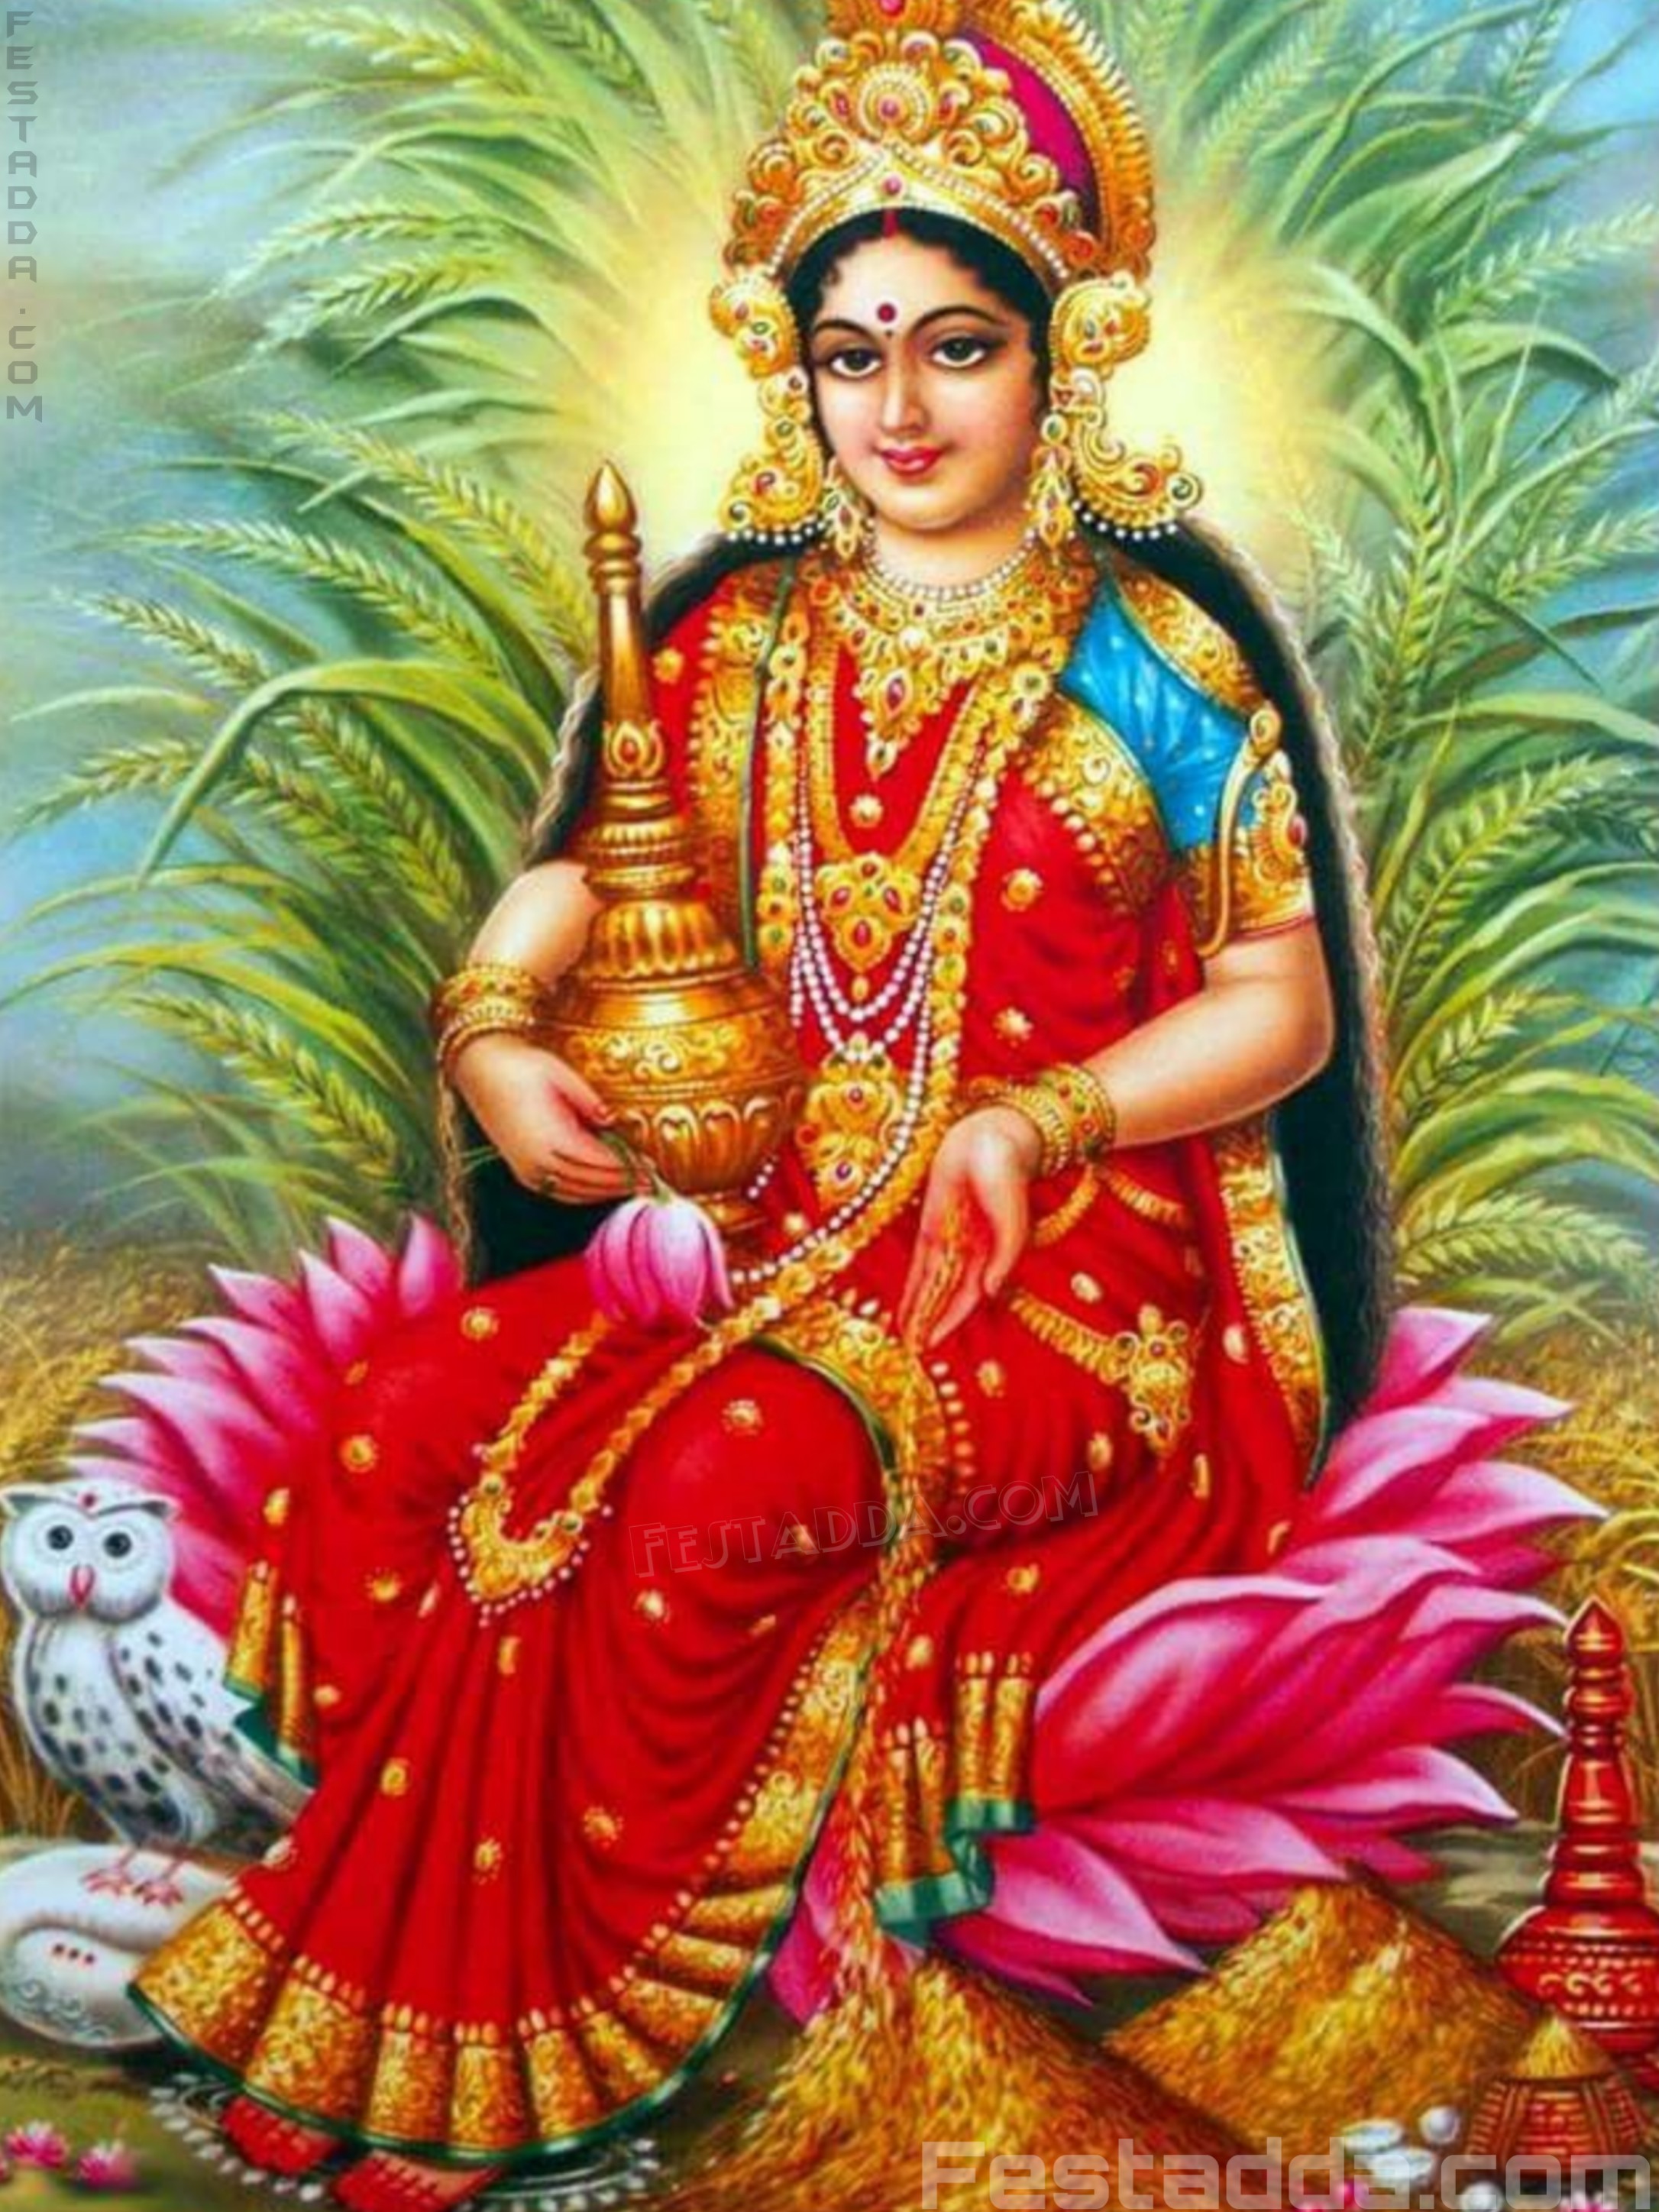 Lakshmi Devi Image HD Wallpaper 1080p Maa Laxmi Photo Devi Good Morning